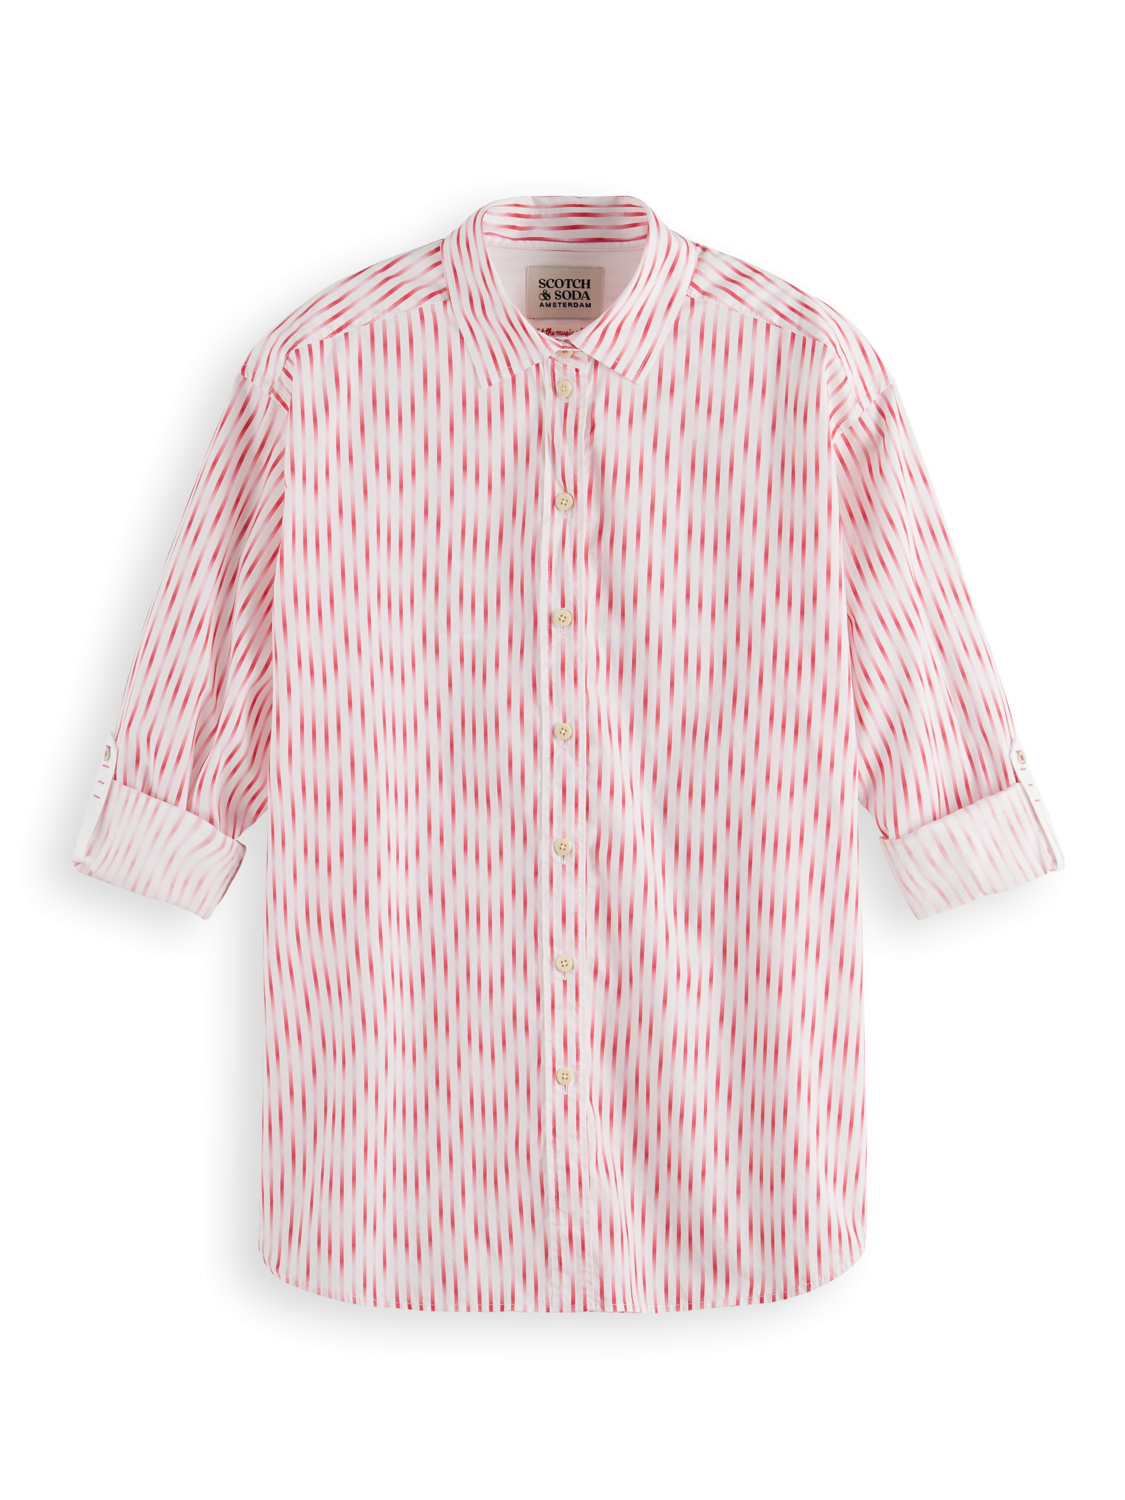 Рубашка женская Scotch & Soda 175012/6425 розовая 40